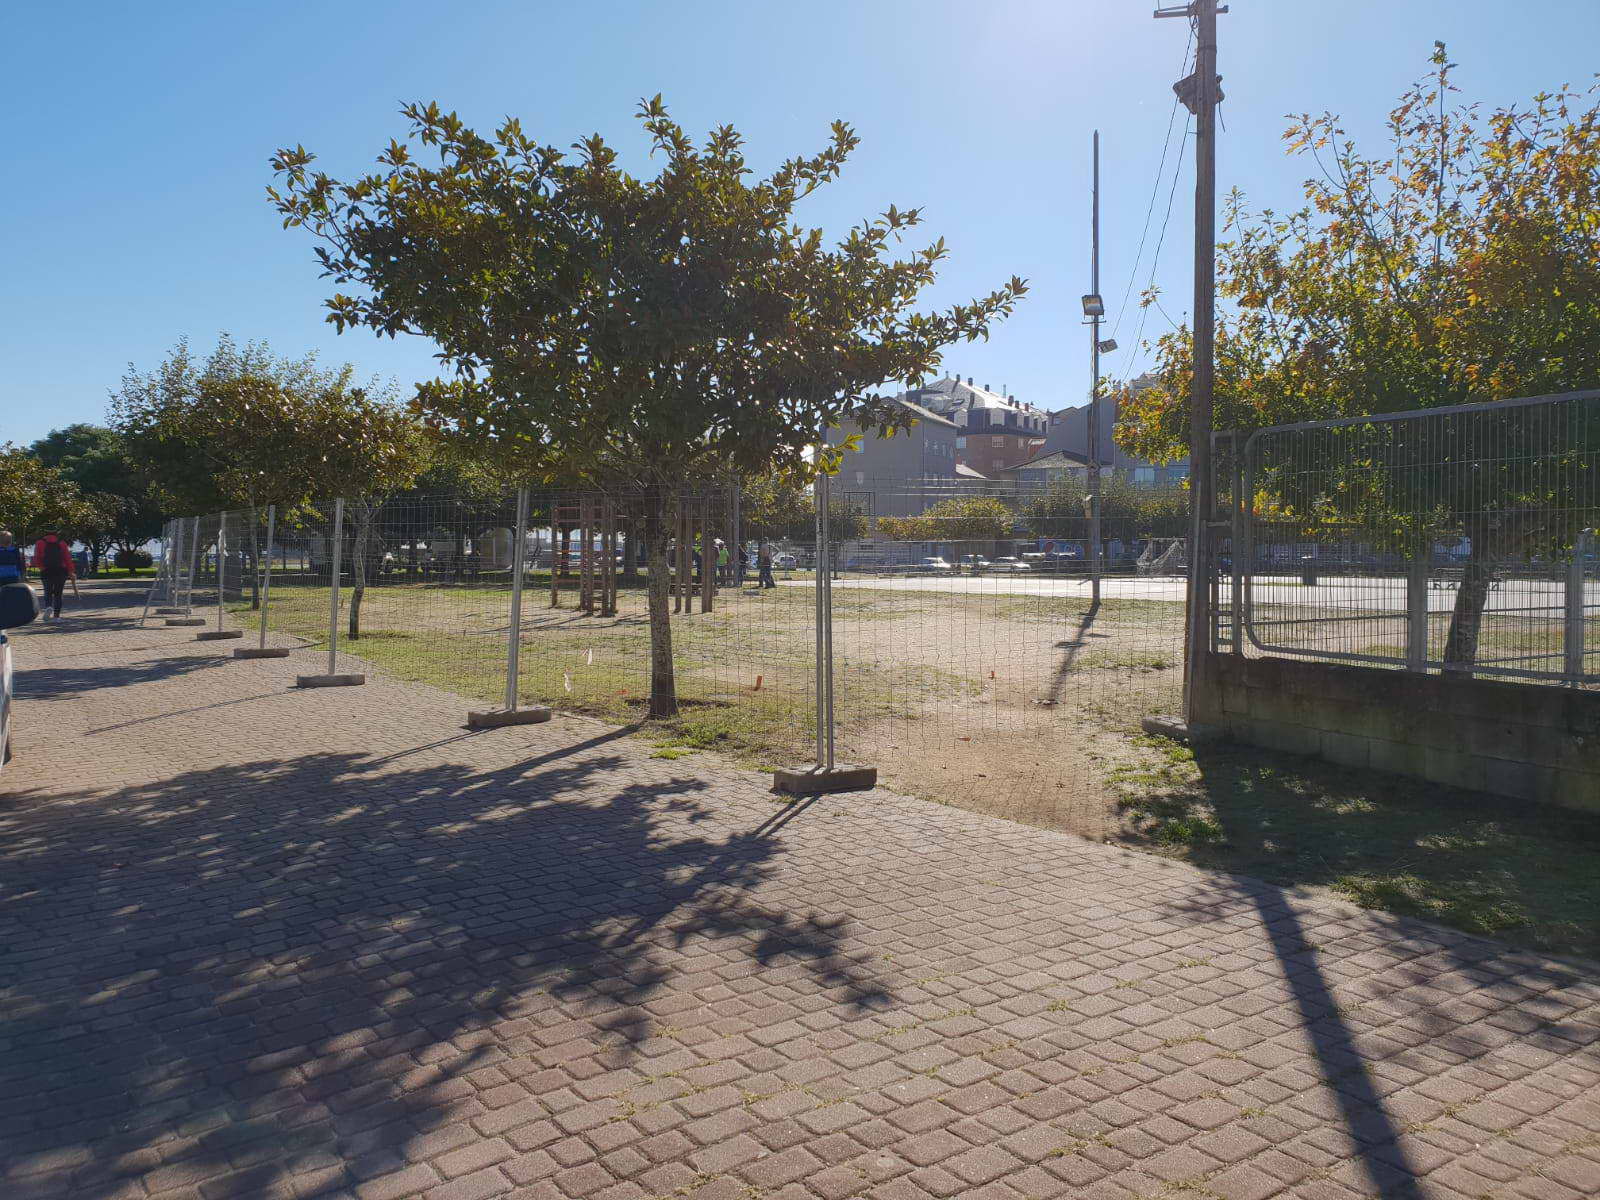 Ayer comenzaron las obras de reforma integral de la zona deportiva del parque Espiñeiro de Portonovo